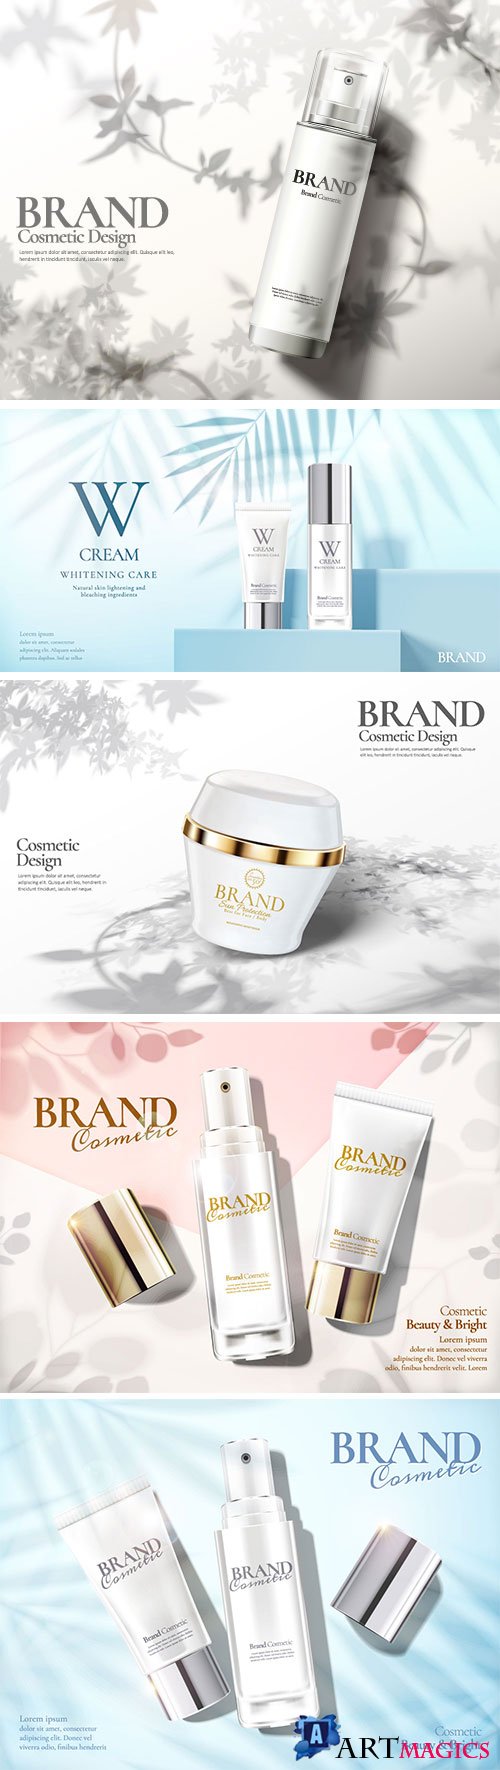 Skin care set ads vector illustration template